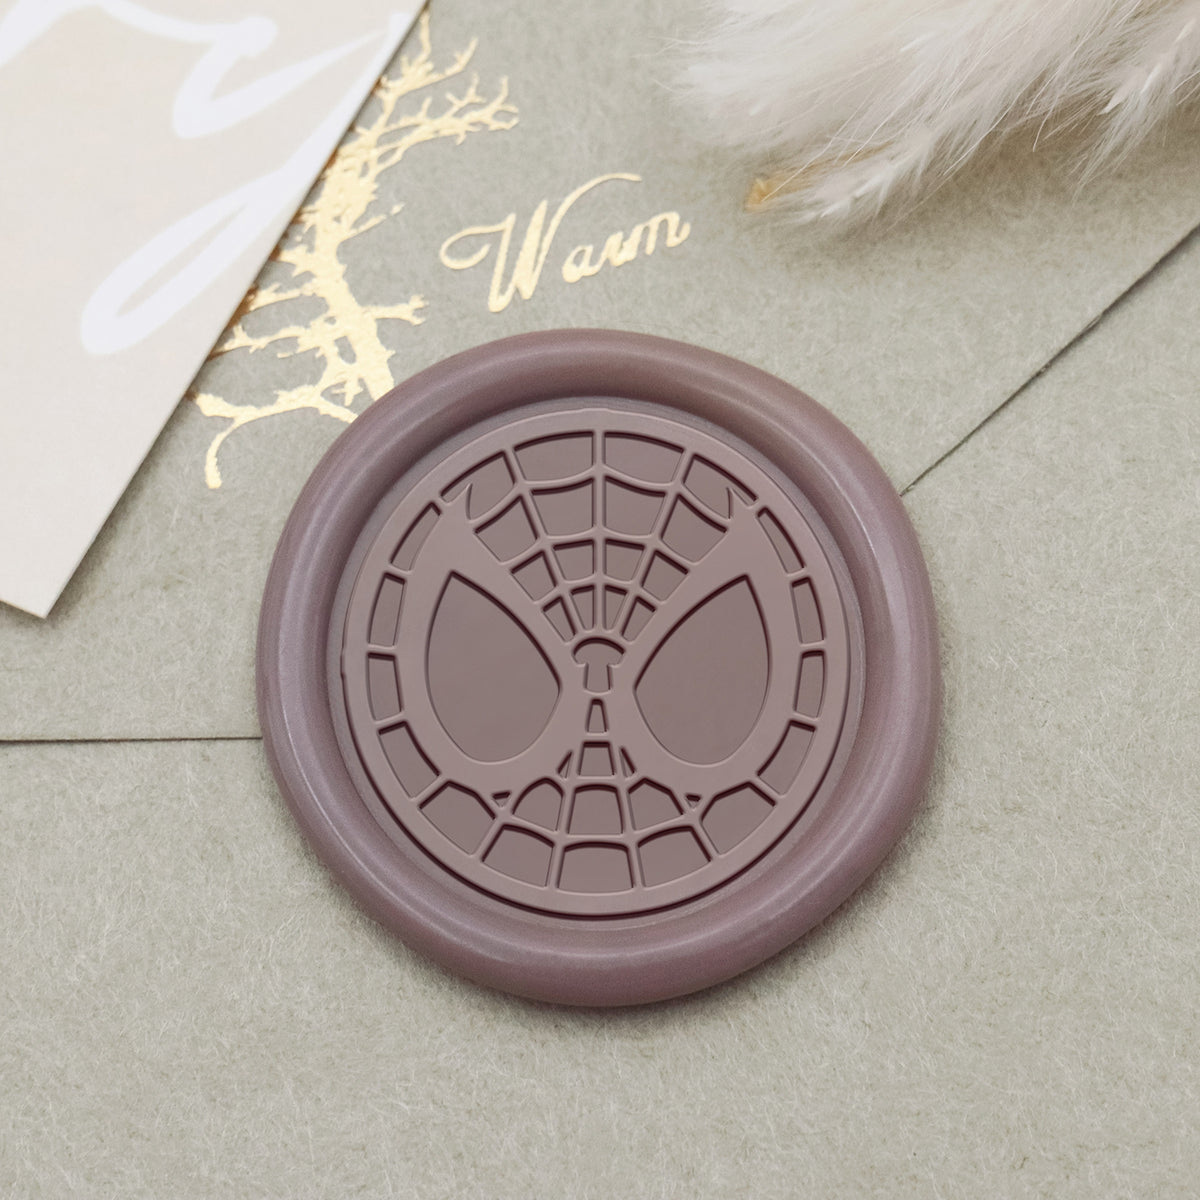 Stamprints Spider-man Wax Seal Stamp 1